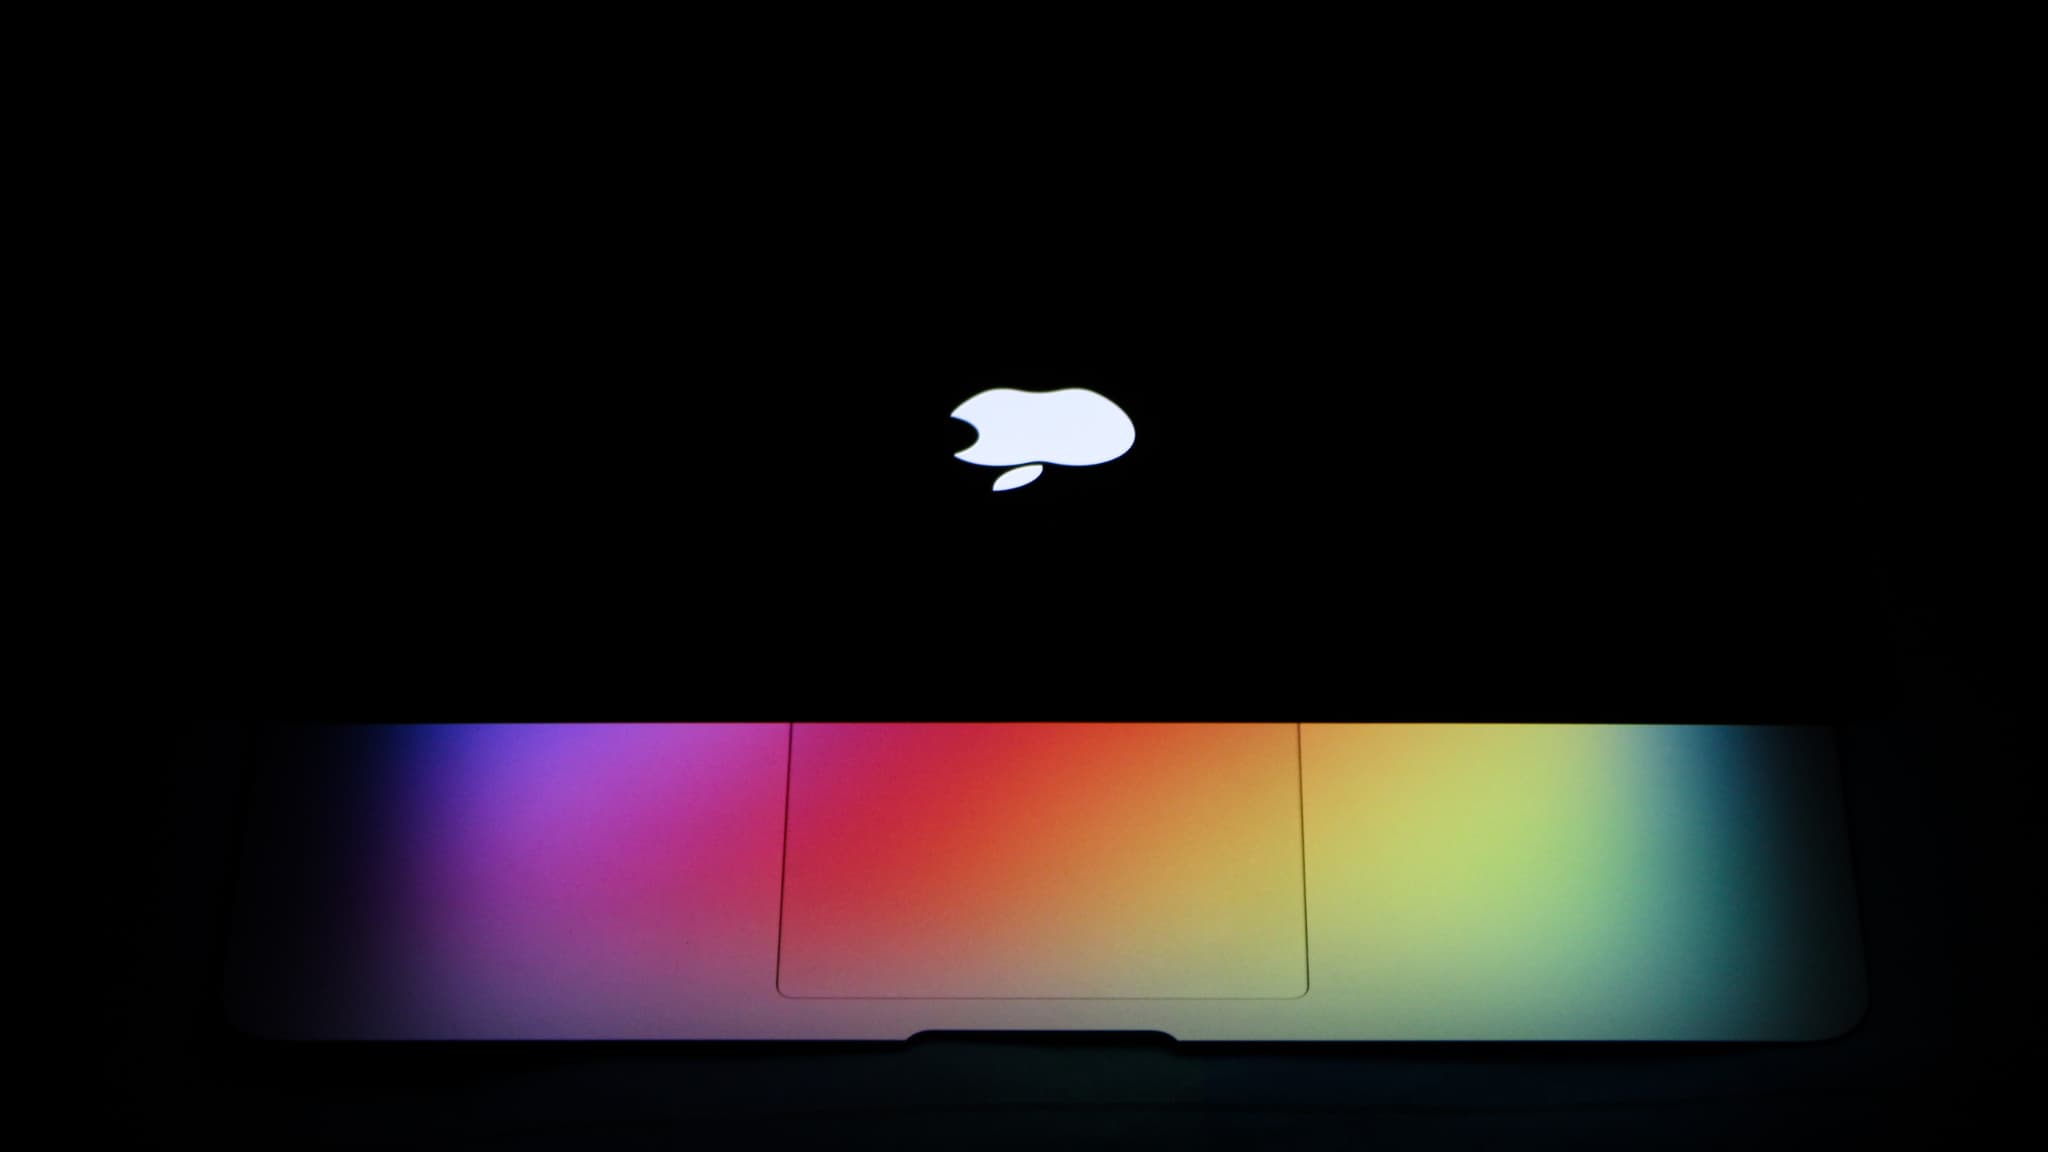 MacBook Air Apple : prix réduit sur le portable que tout le monde connaît